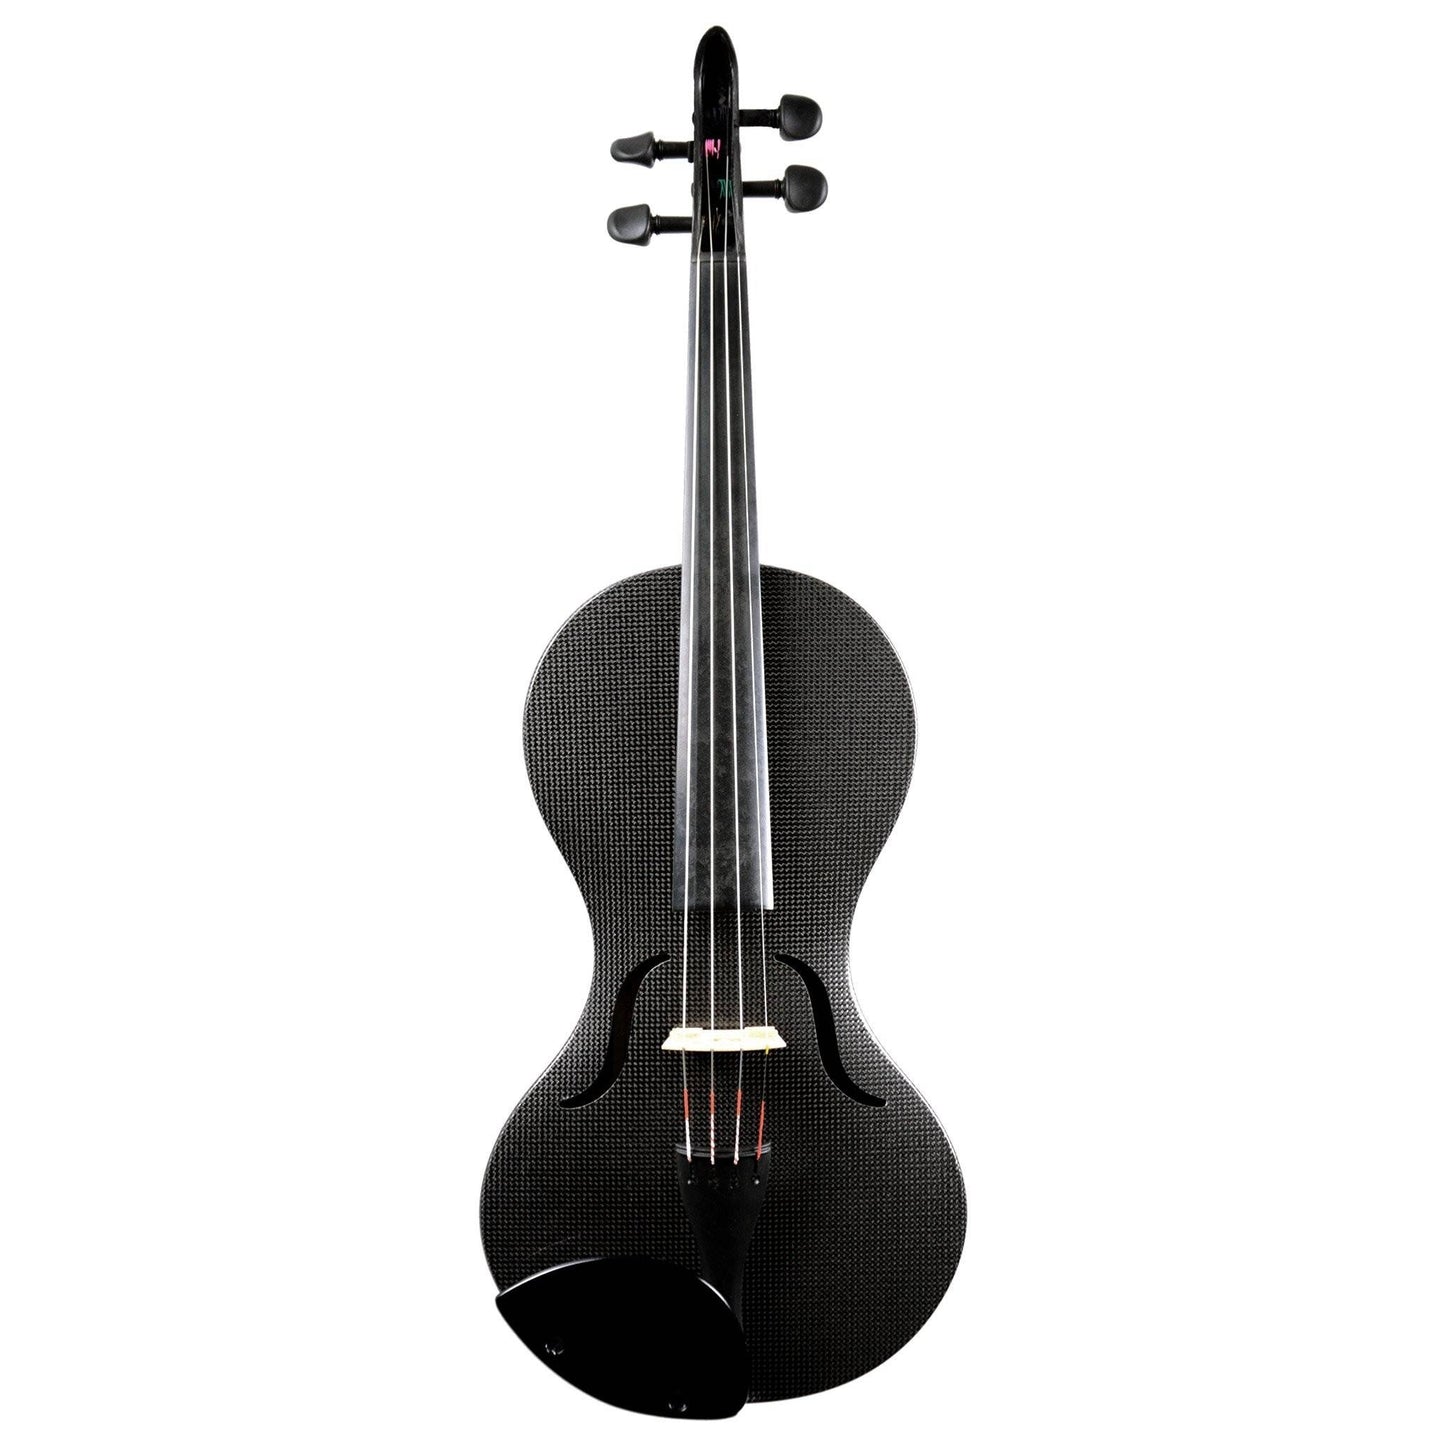 NEU: Carbon-Violinen-Set Gr. 3/4 inkl. Koffer, Bogen, Zubehör